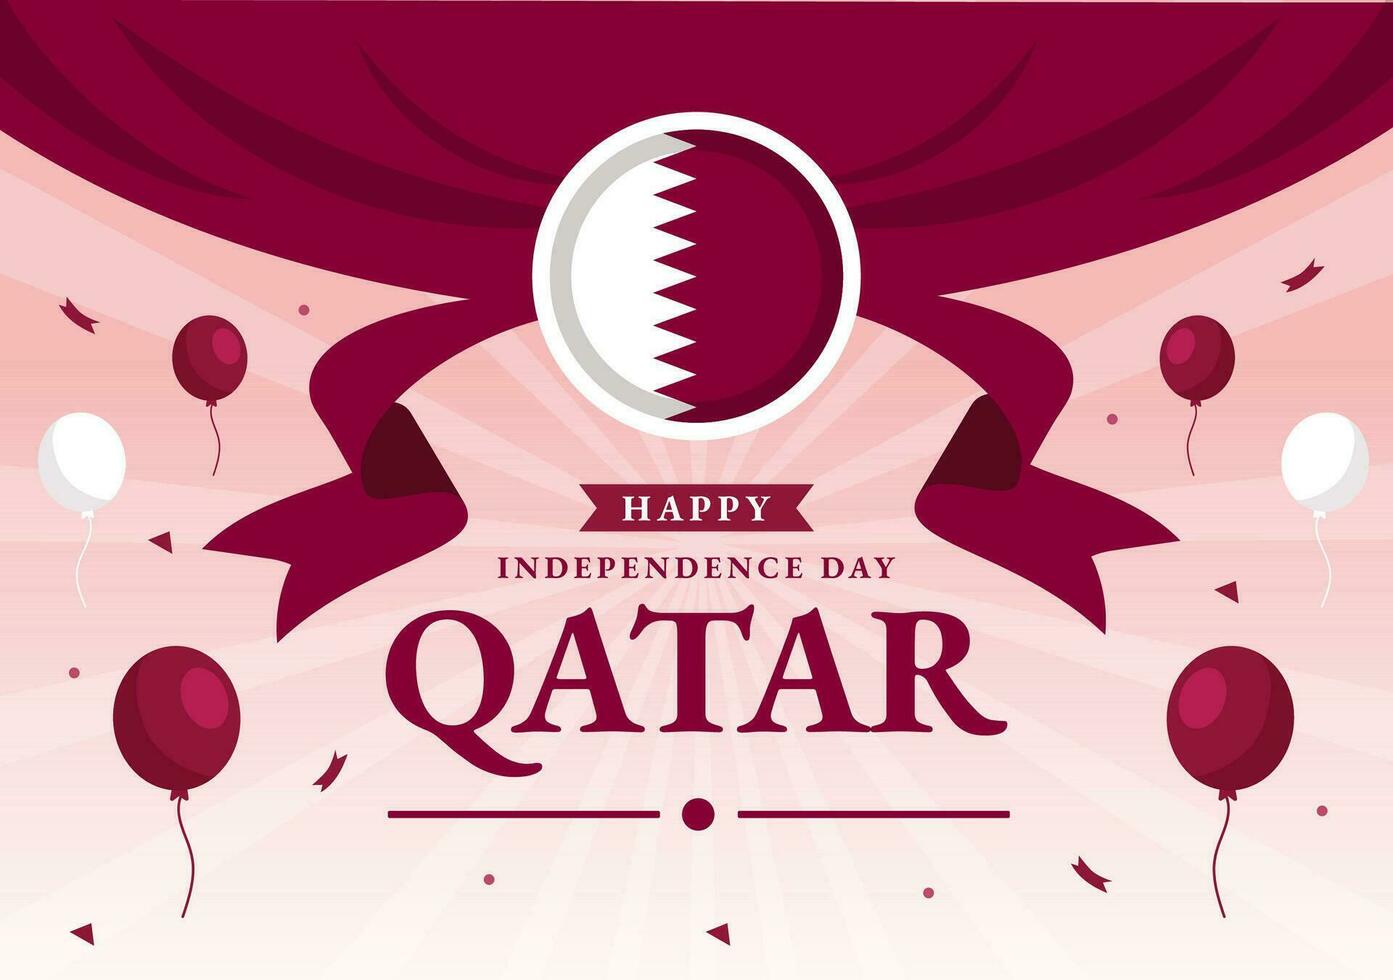 contento Katar independencia día vector ilustración en 3 septiembre con ondulación bandera antecedentes en plano dibujos animados mano dibujado aterrizaje página plantillas